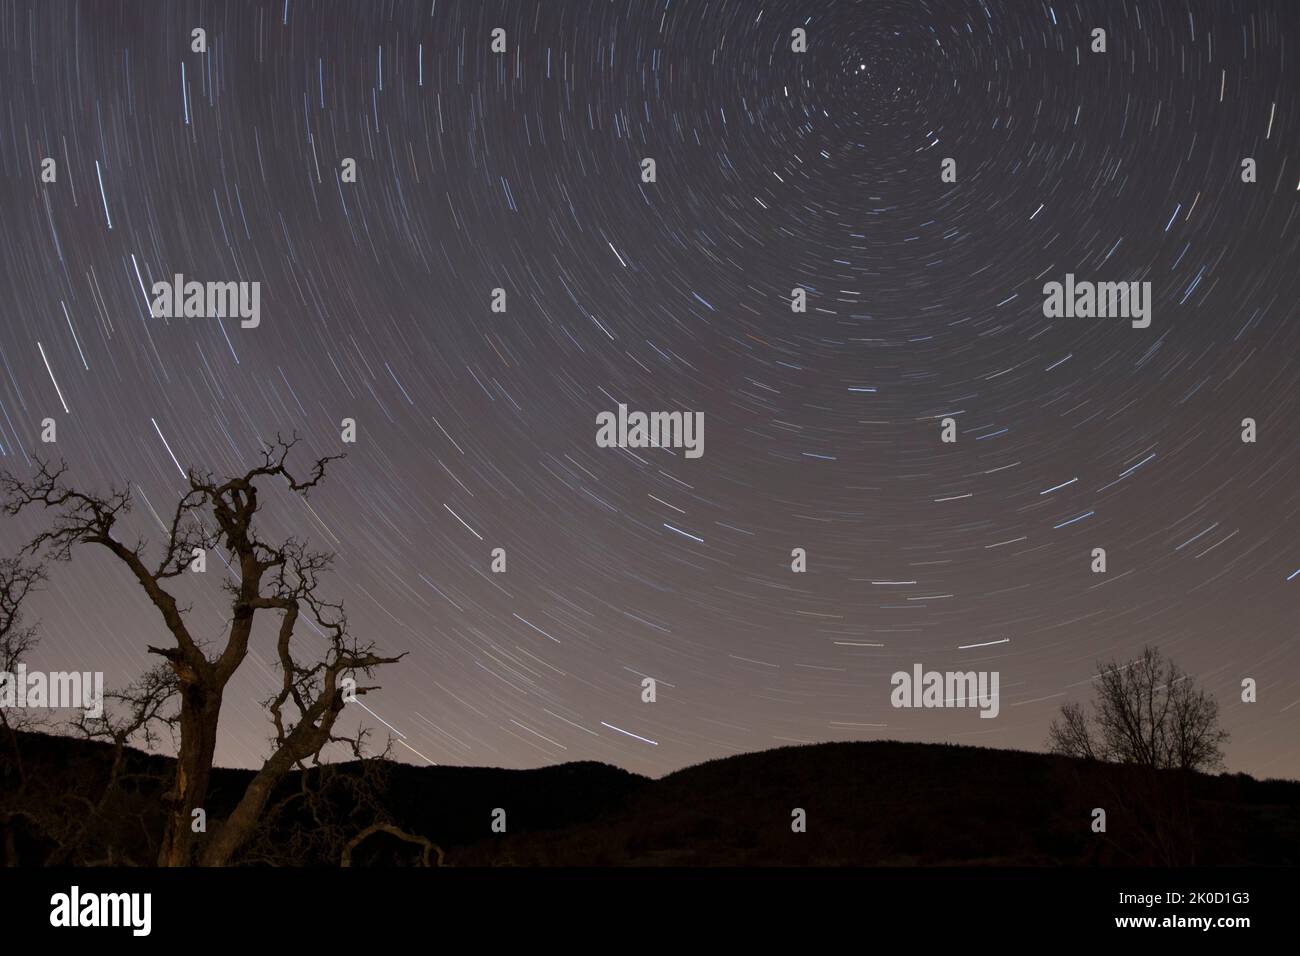 Une longue exposition d'un ciel nocturne rempli d'étoiles, avec des arbres et des collines silhouettes Banque D'Images